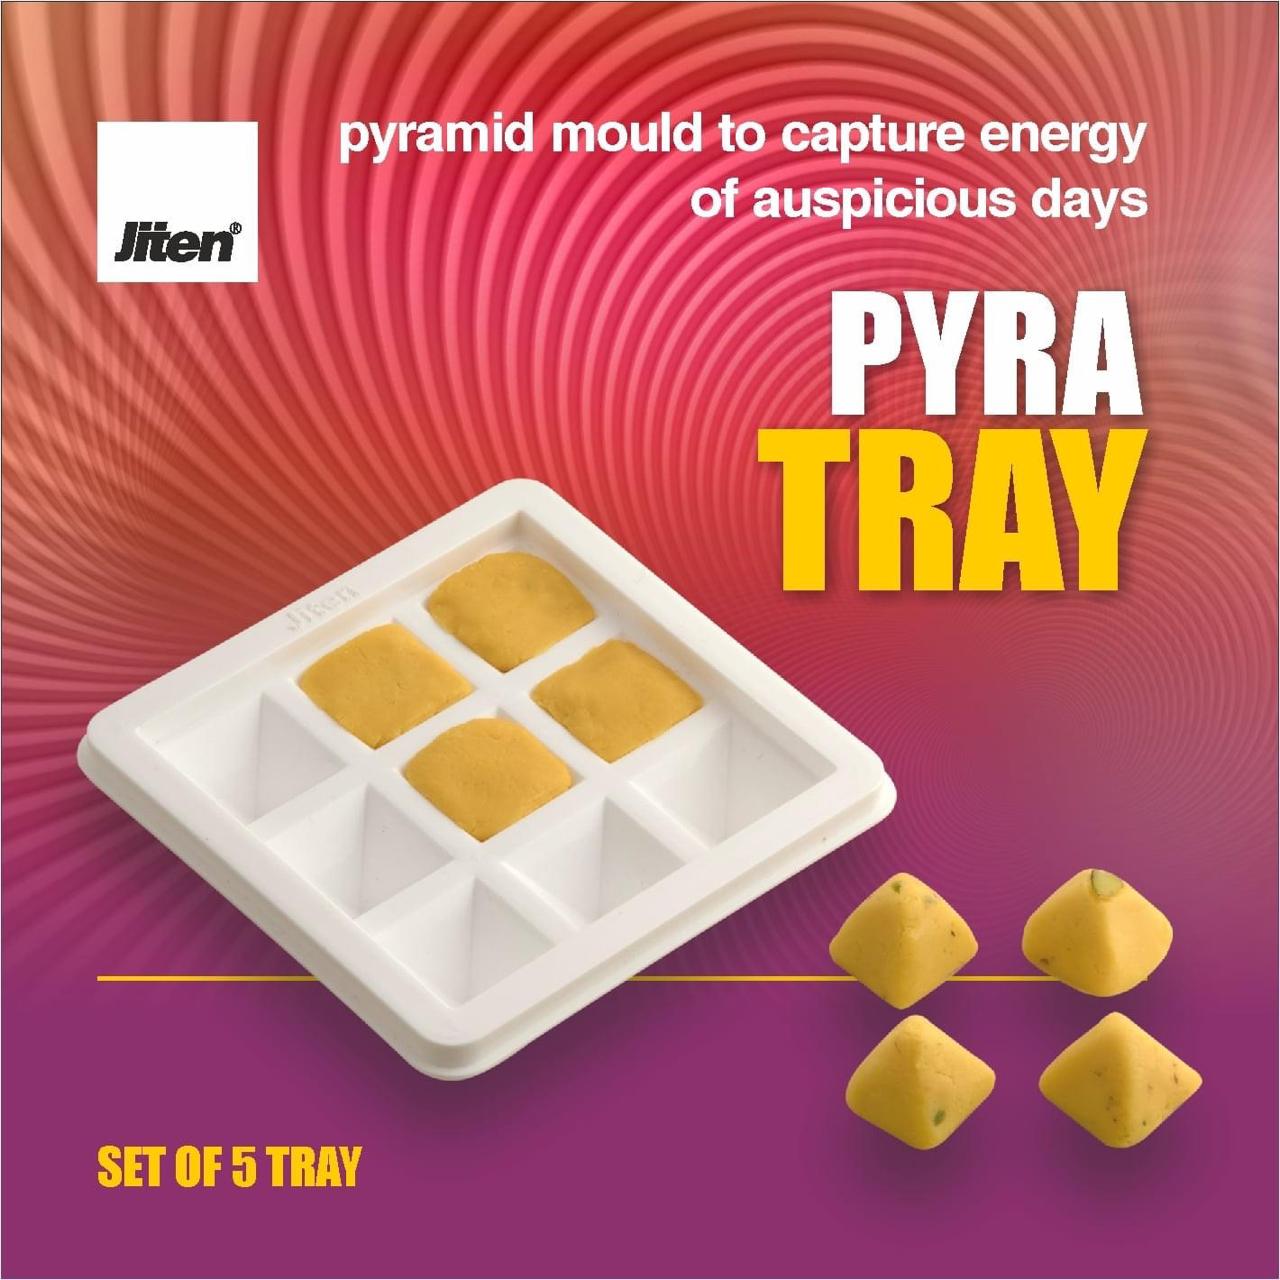 Pyra Tray